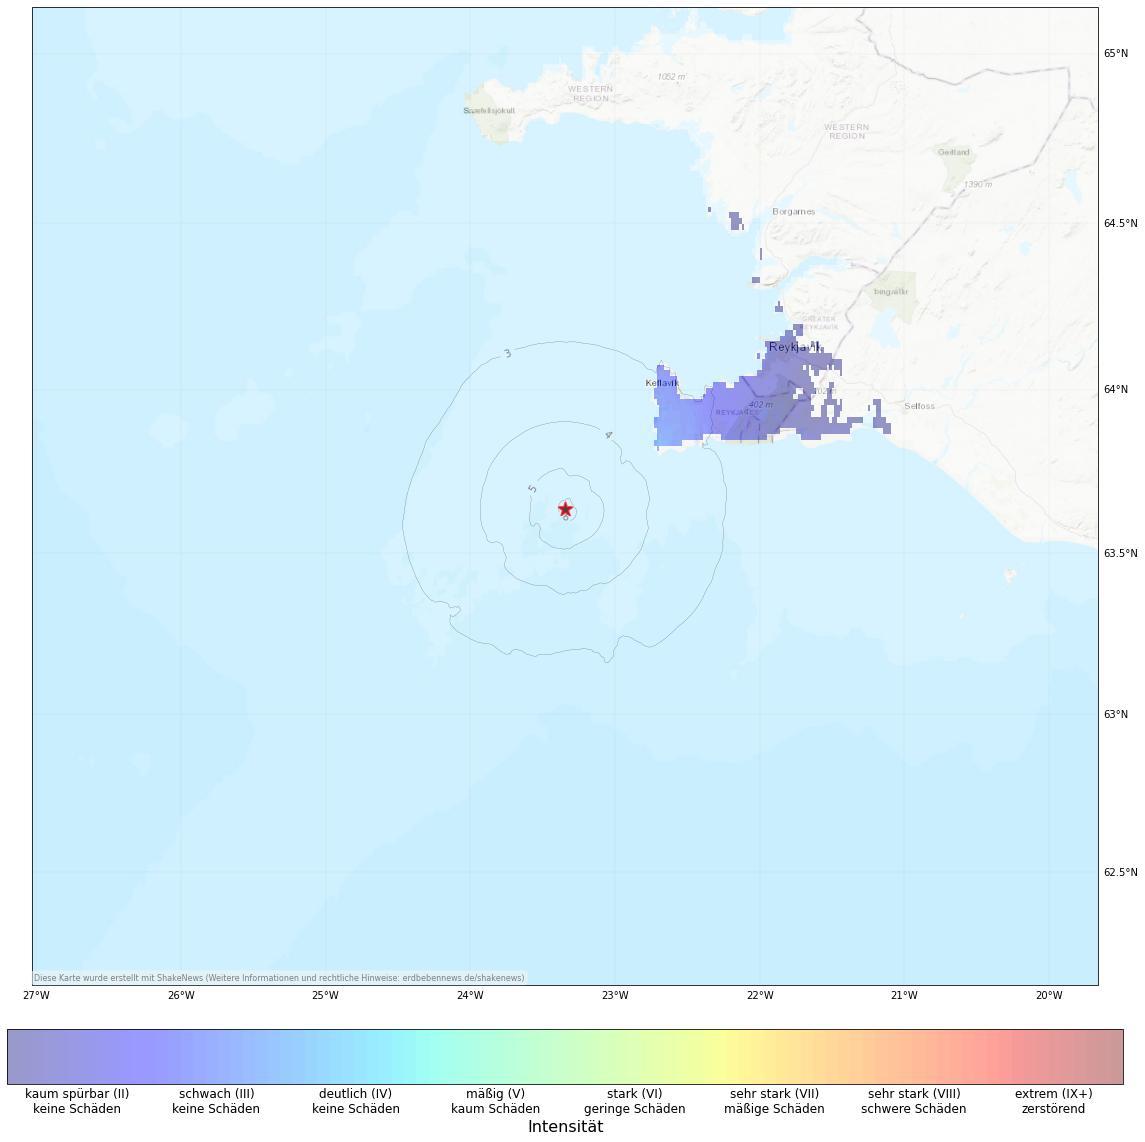 Berechnete Intensität (ShakeMap) des Erdbebens der Stärke 4.5 am 13. August, 22:29 Uhr in Island